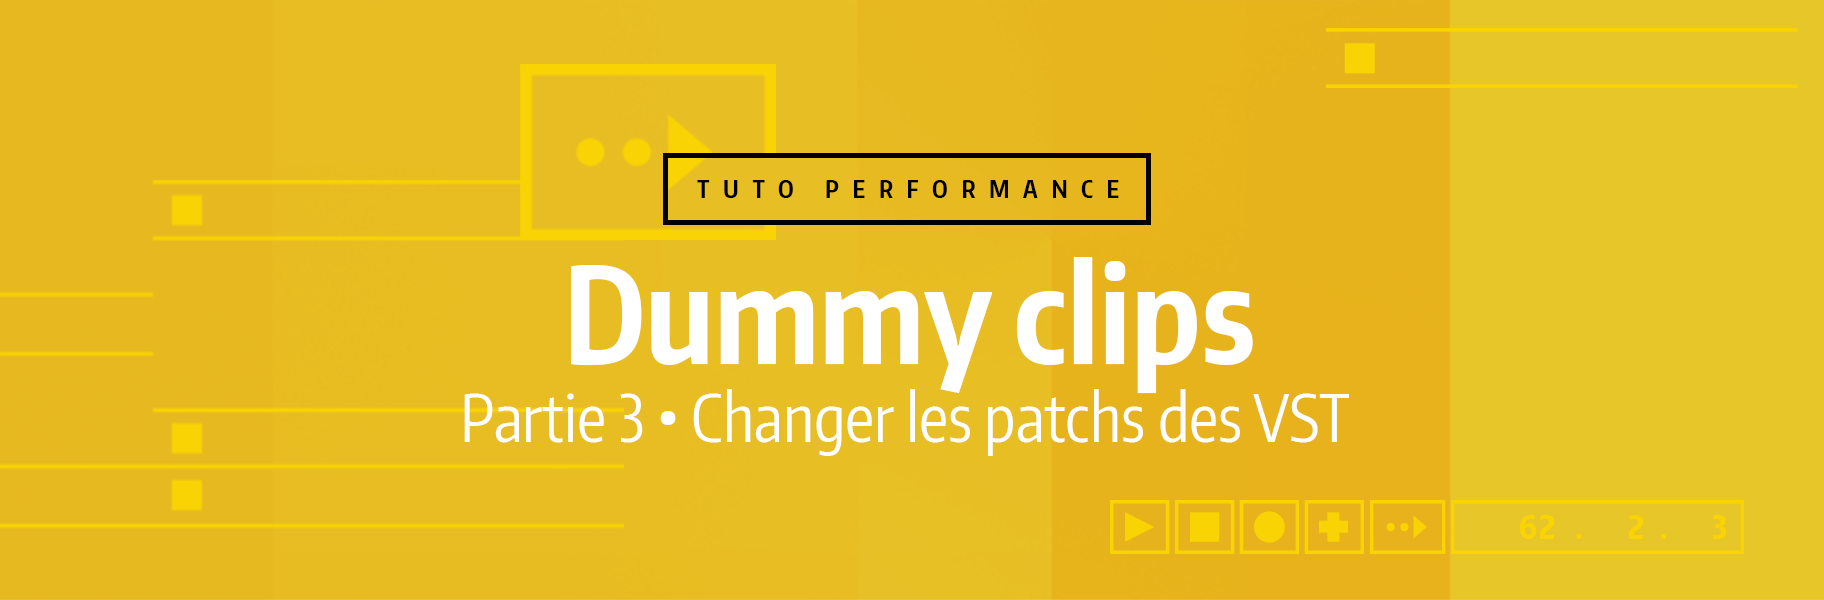 Tutoriel Ableton Live - Dummy clips - 3. Changer les patchs des VST